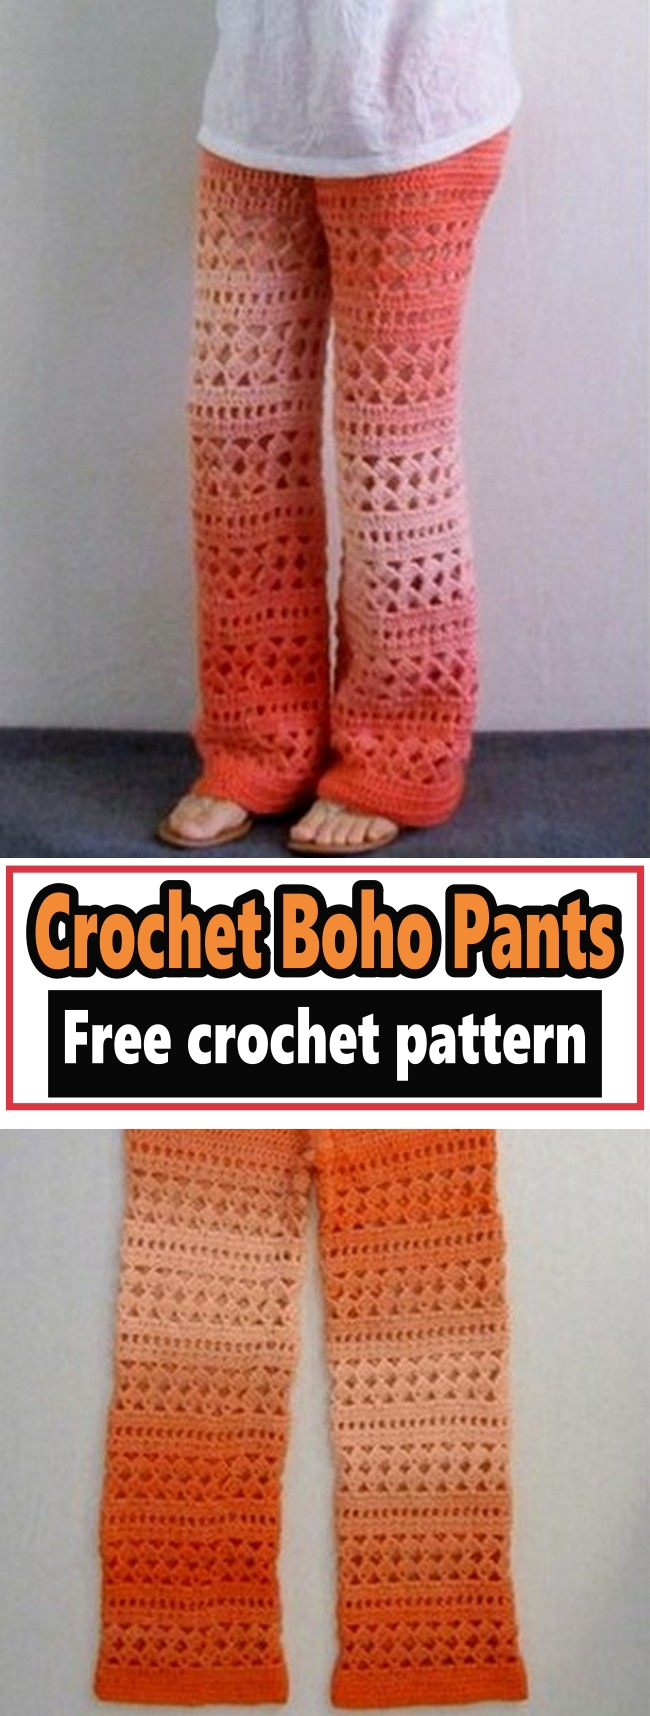 Crochet Boho Pants